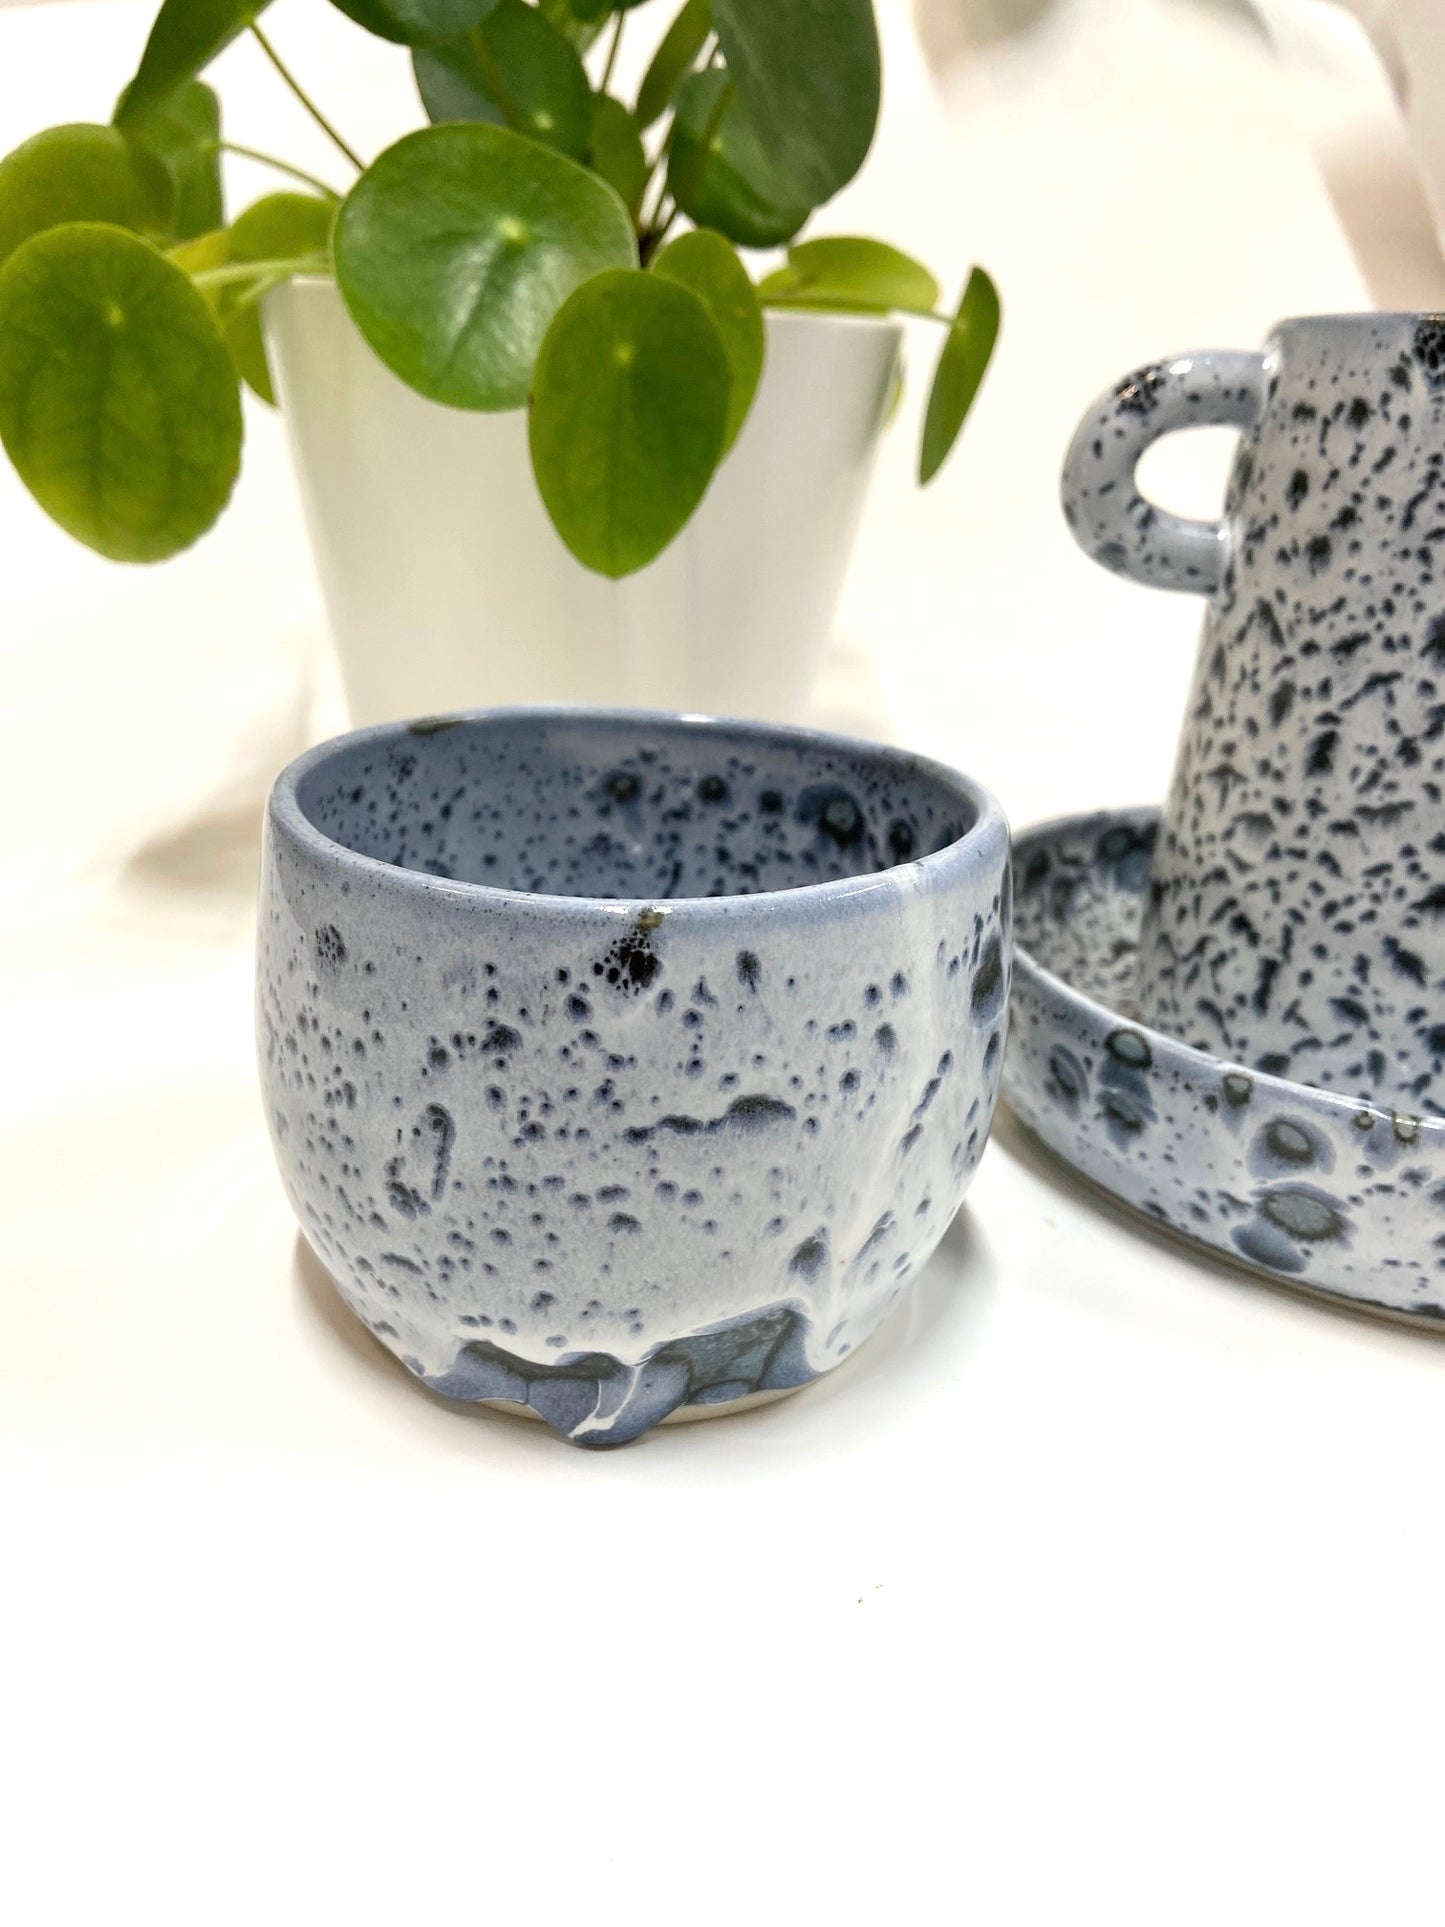 Small Planter in Blue Tones - Dreamy Pots Studio